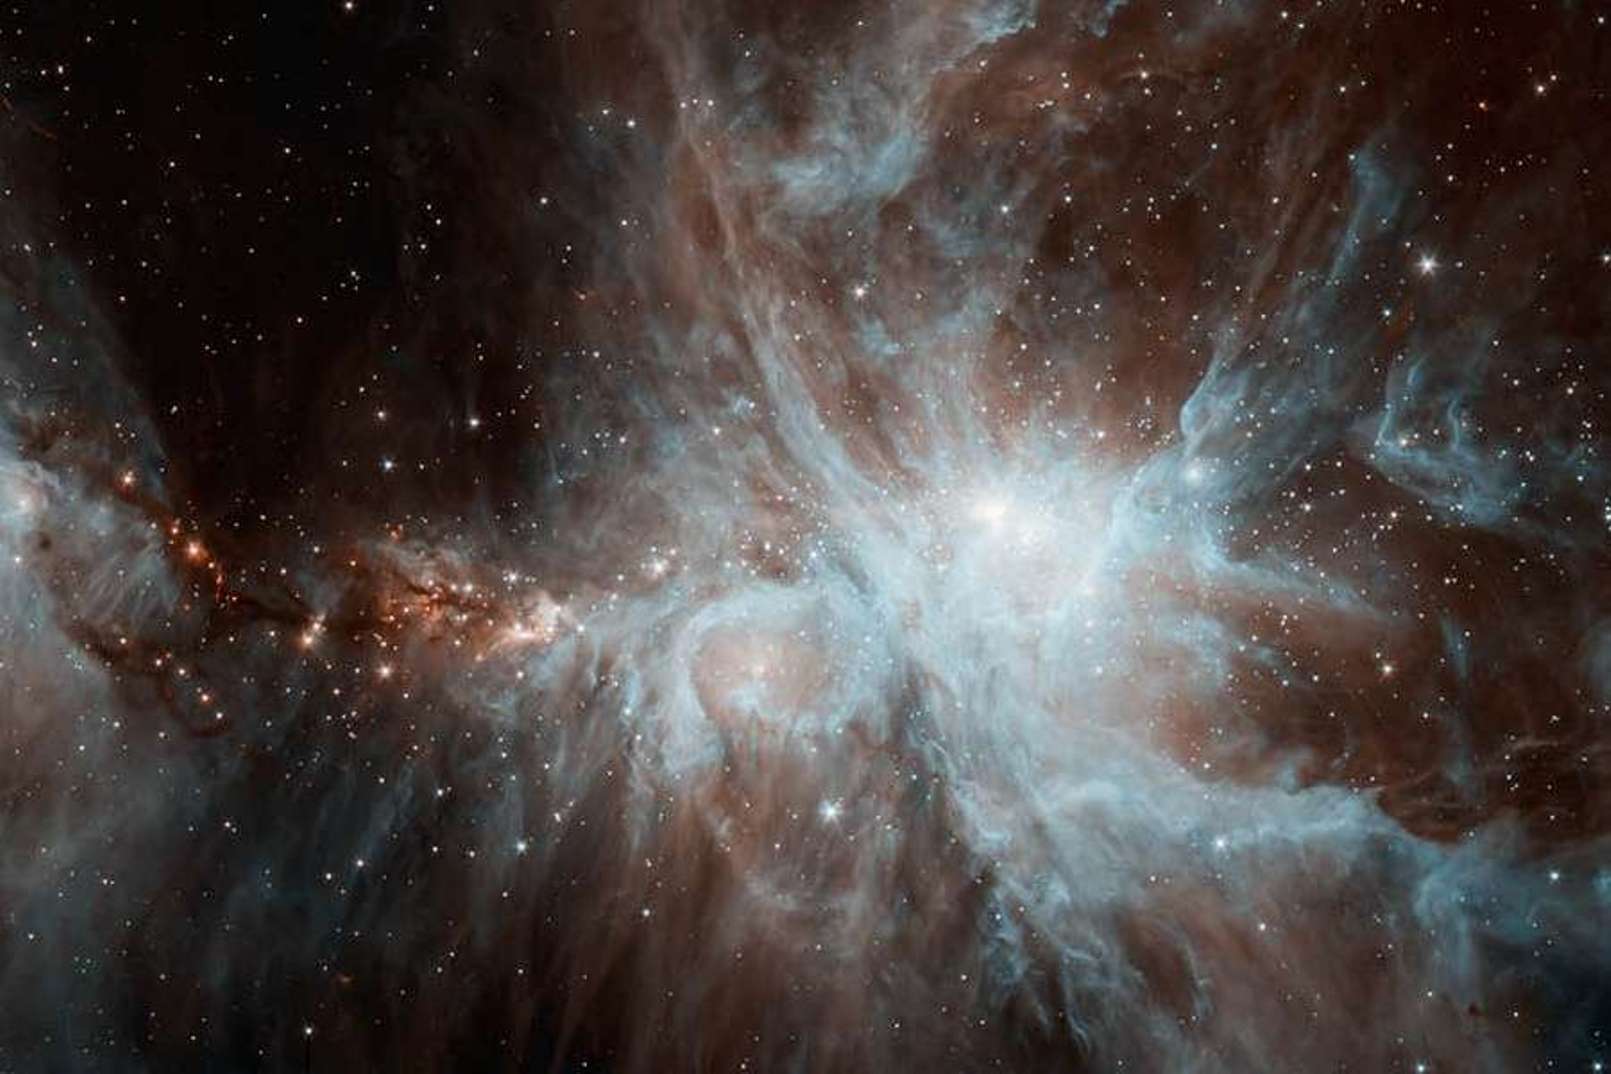 La nébuleuse d’Orion (vue ici par le télescope Spitzer) produit de la lumière polarisée circulairement à 17 % dans l’infrarouge. Selon les calculs, elle émettrait dans l’ultraviolet, un rayonnement capable de casser les liaisons covalentes (fortes) entre les atomes des molécules de glace. © CNRS (commentaire)/Nasa, JPL/Caltech, J. Stauffer (image) 